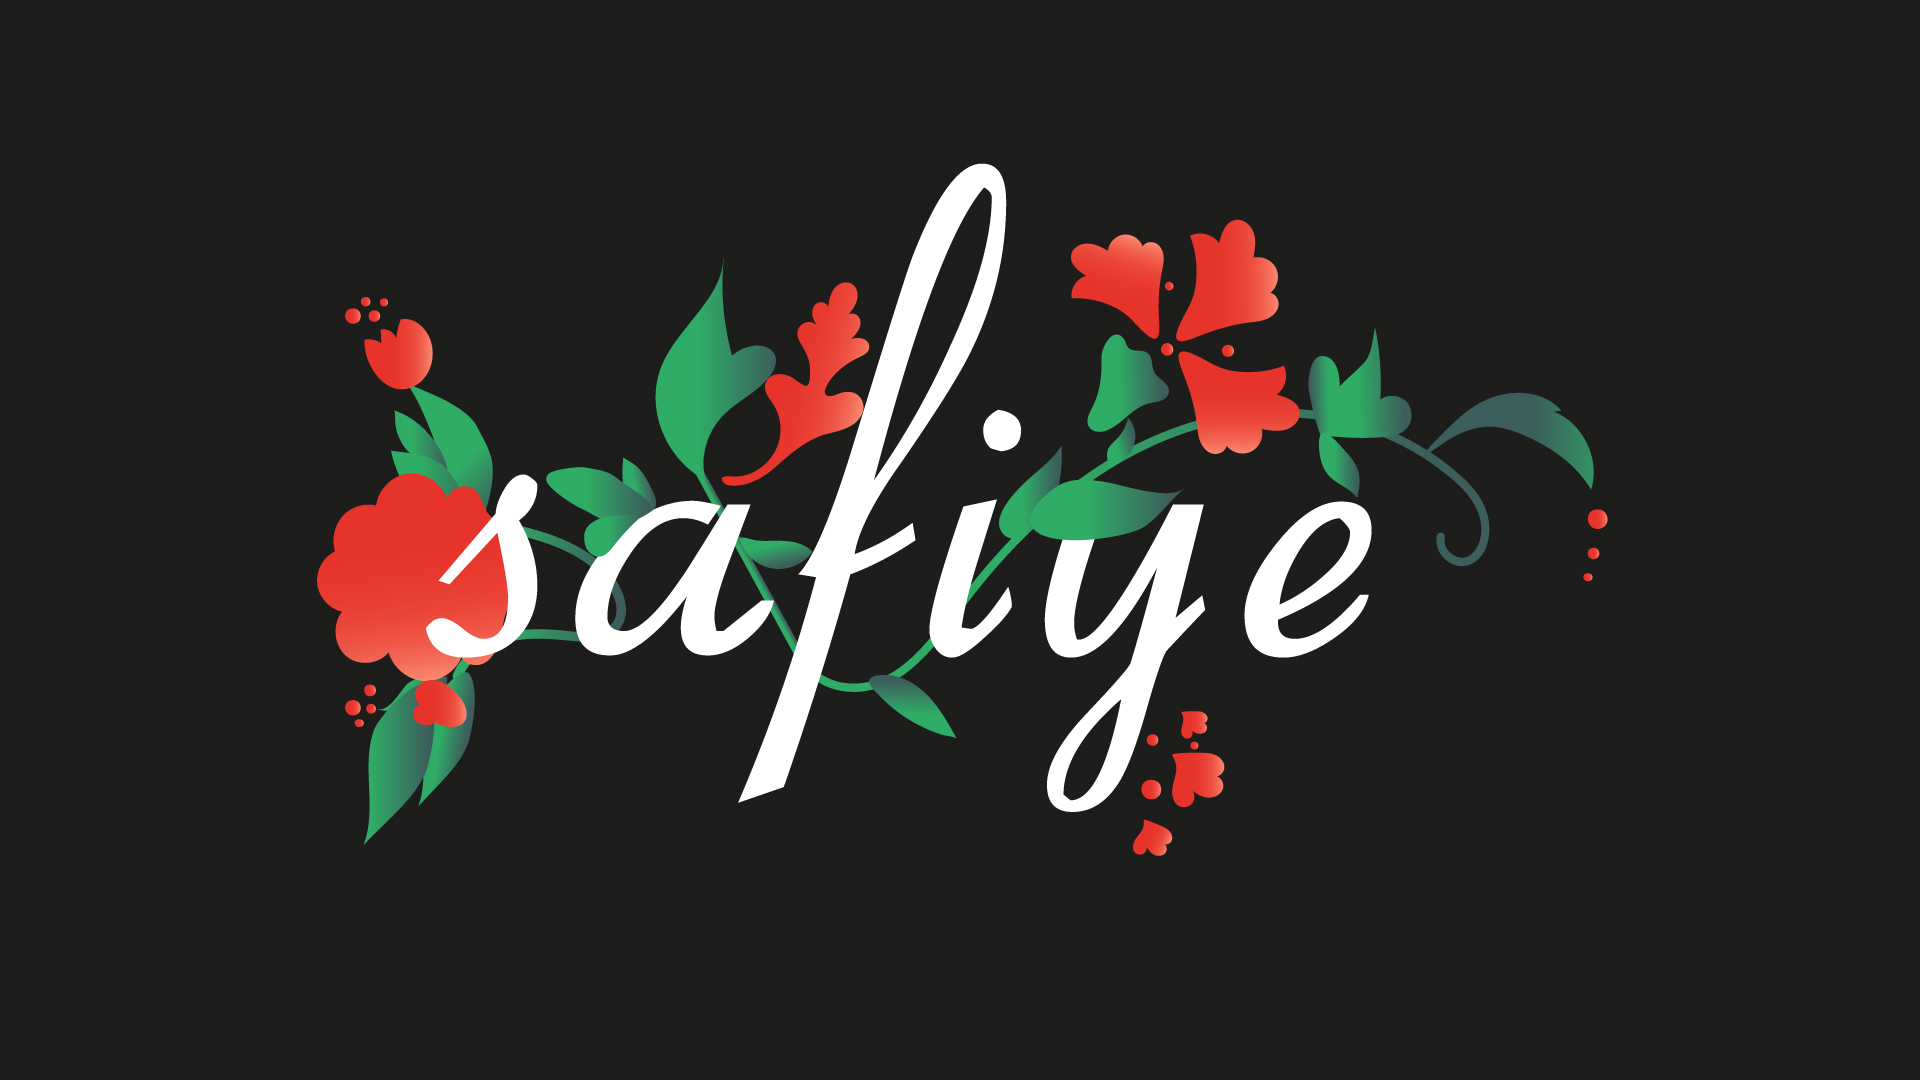 safiye_logo.jpg